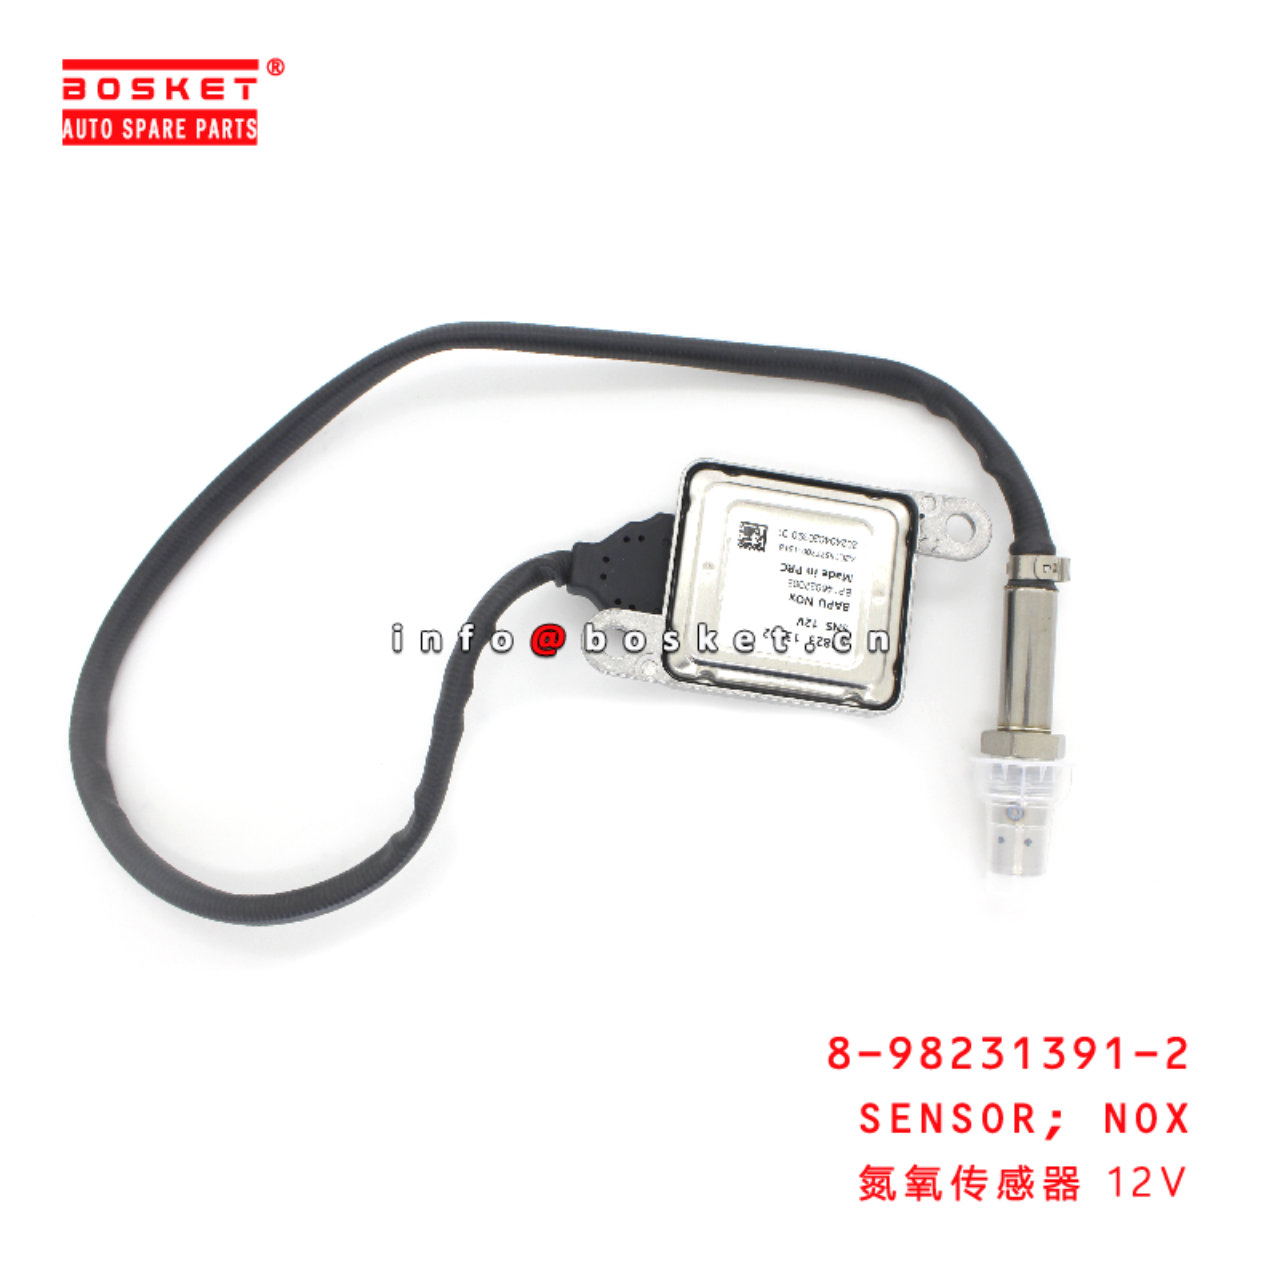 8-98231391-2 Nox Sensor suitable for ISUZU 8982313...